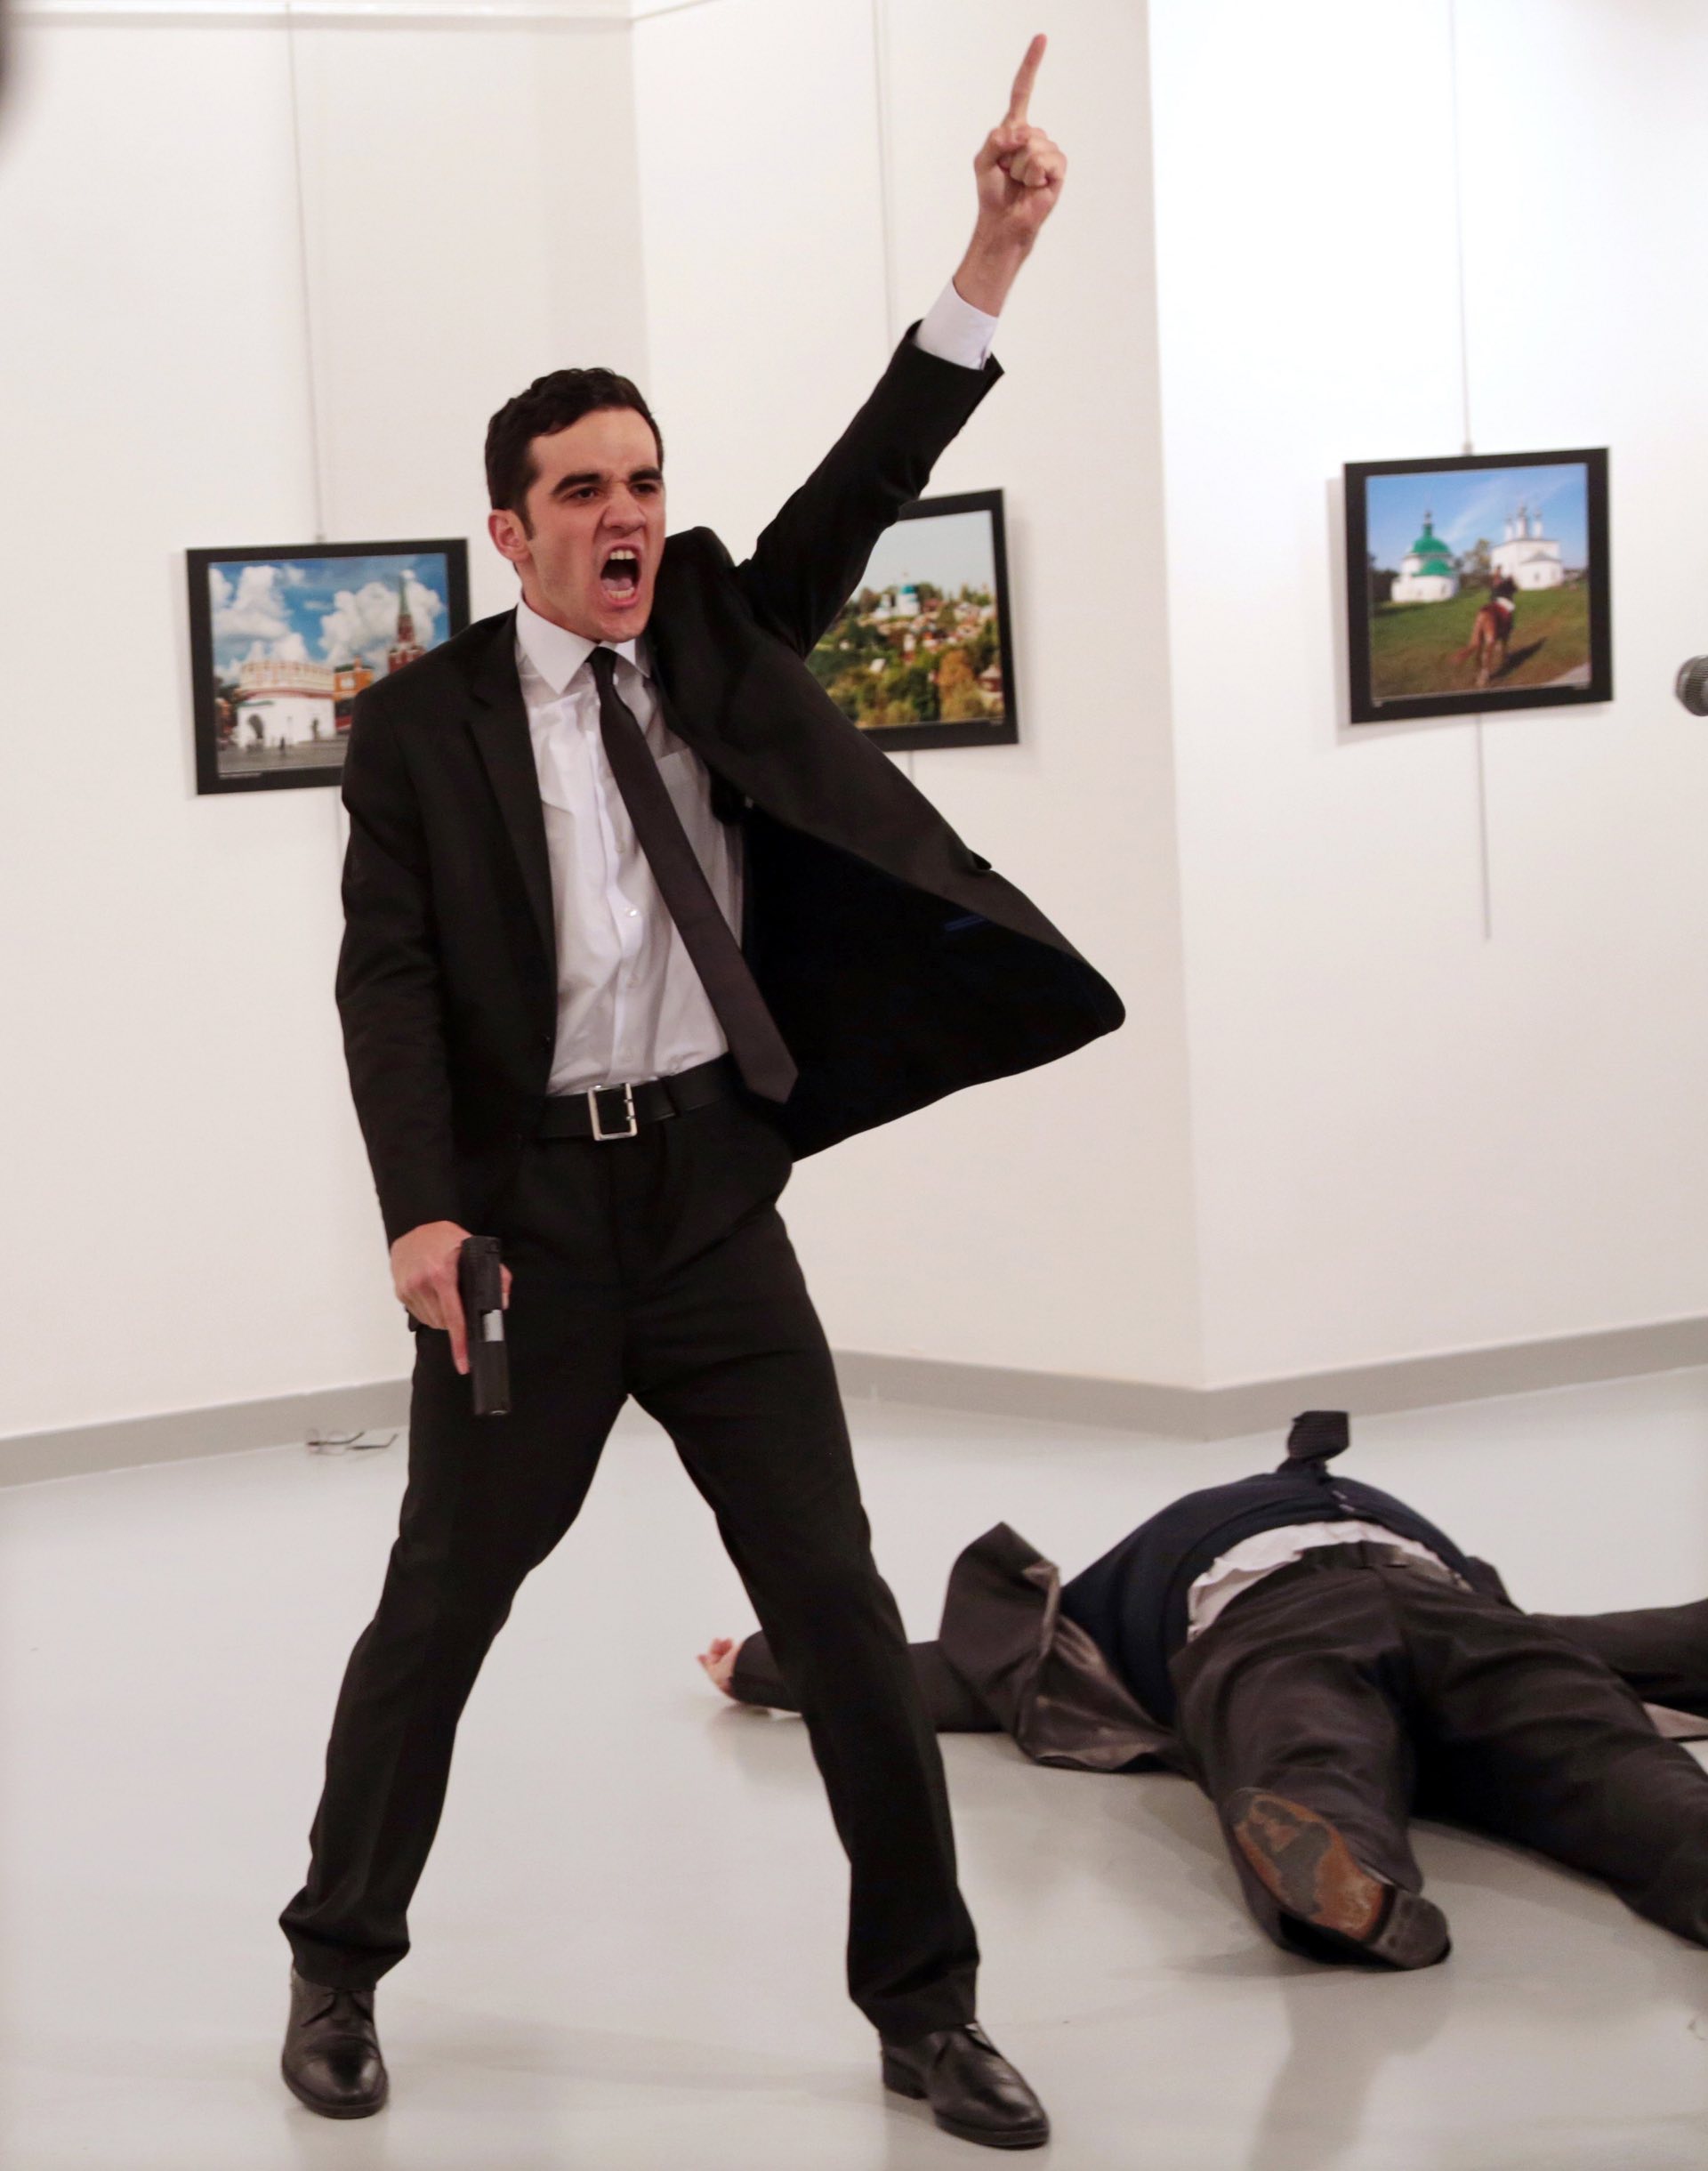 Spot news â stories, first prize MevlÃ¼t Mert AltintaÅ shouts after shooting Andrei Karlov, the Russian ambassador to Turkey, at an art gallery in Ankara. PHOTO: Burhan Ozbilic